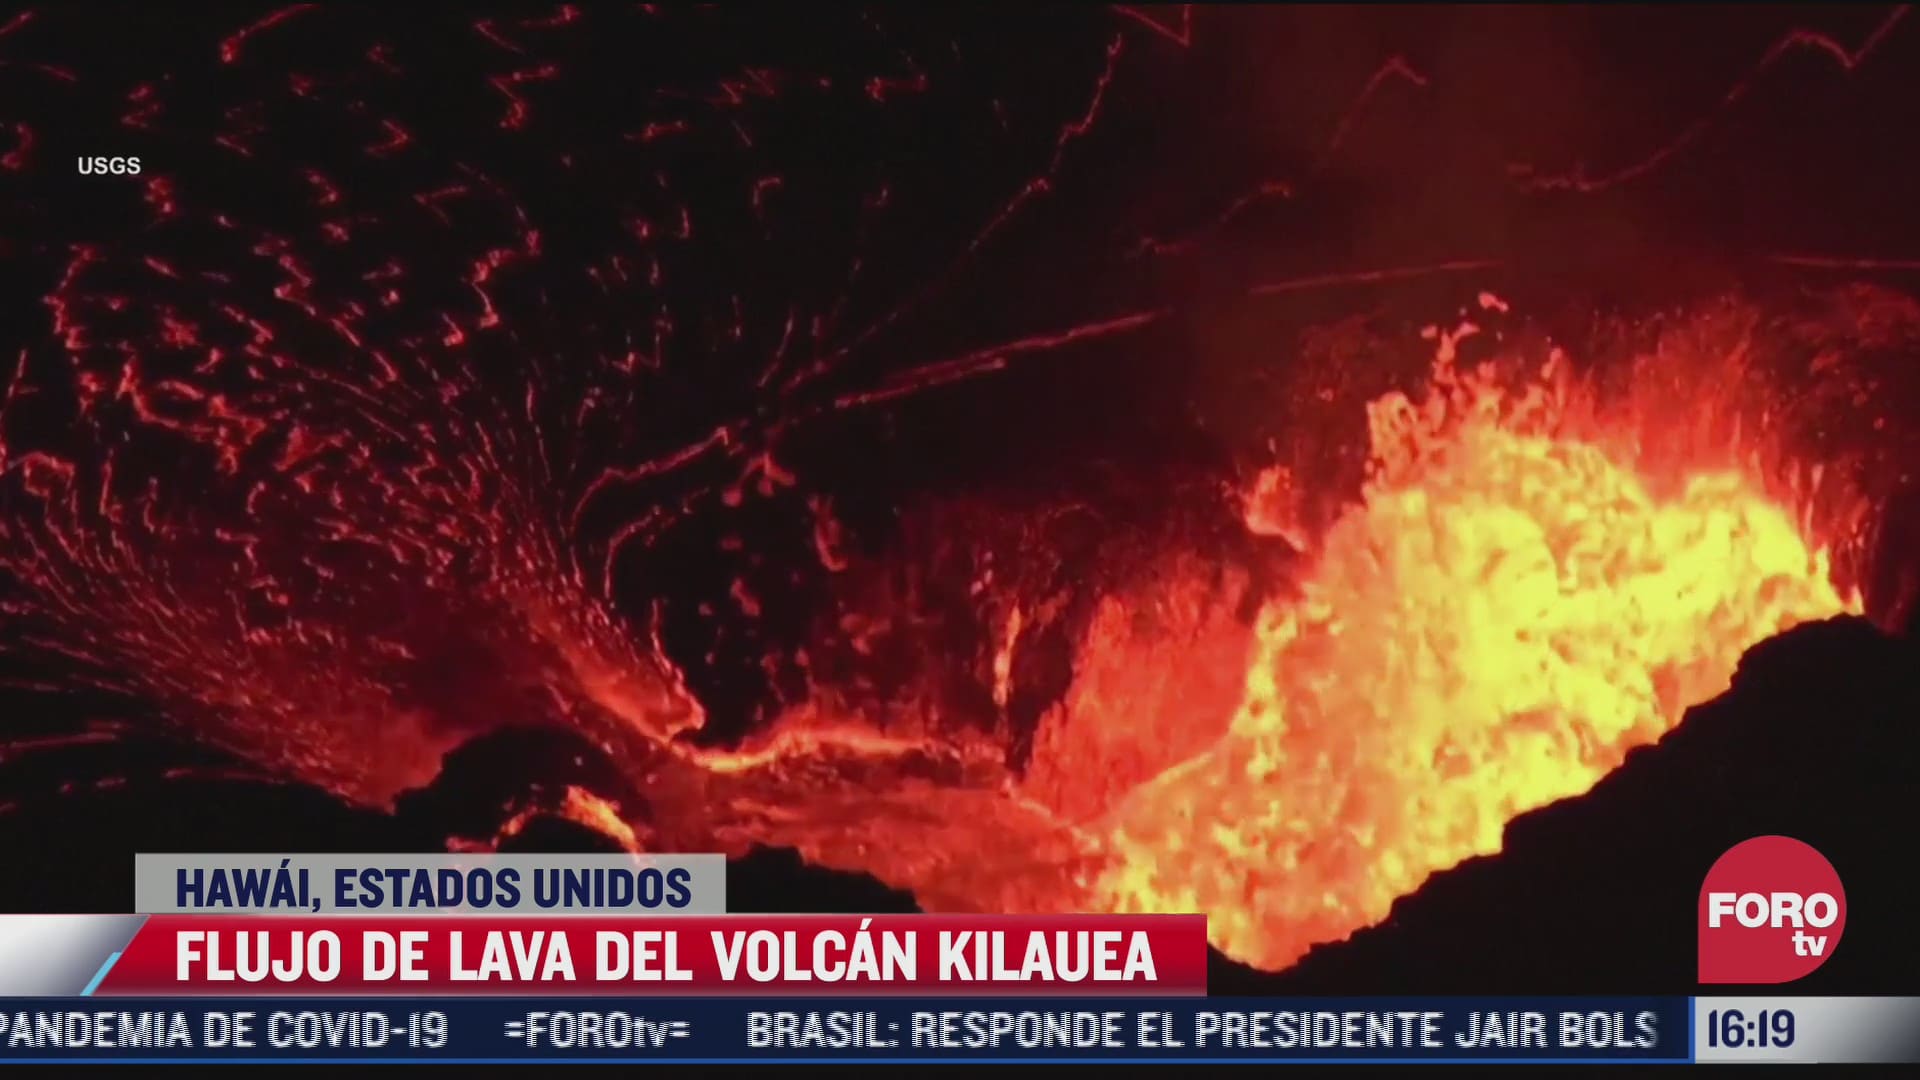 captan impresionantes imagenes del flujo de lava del volcan kilauea